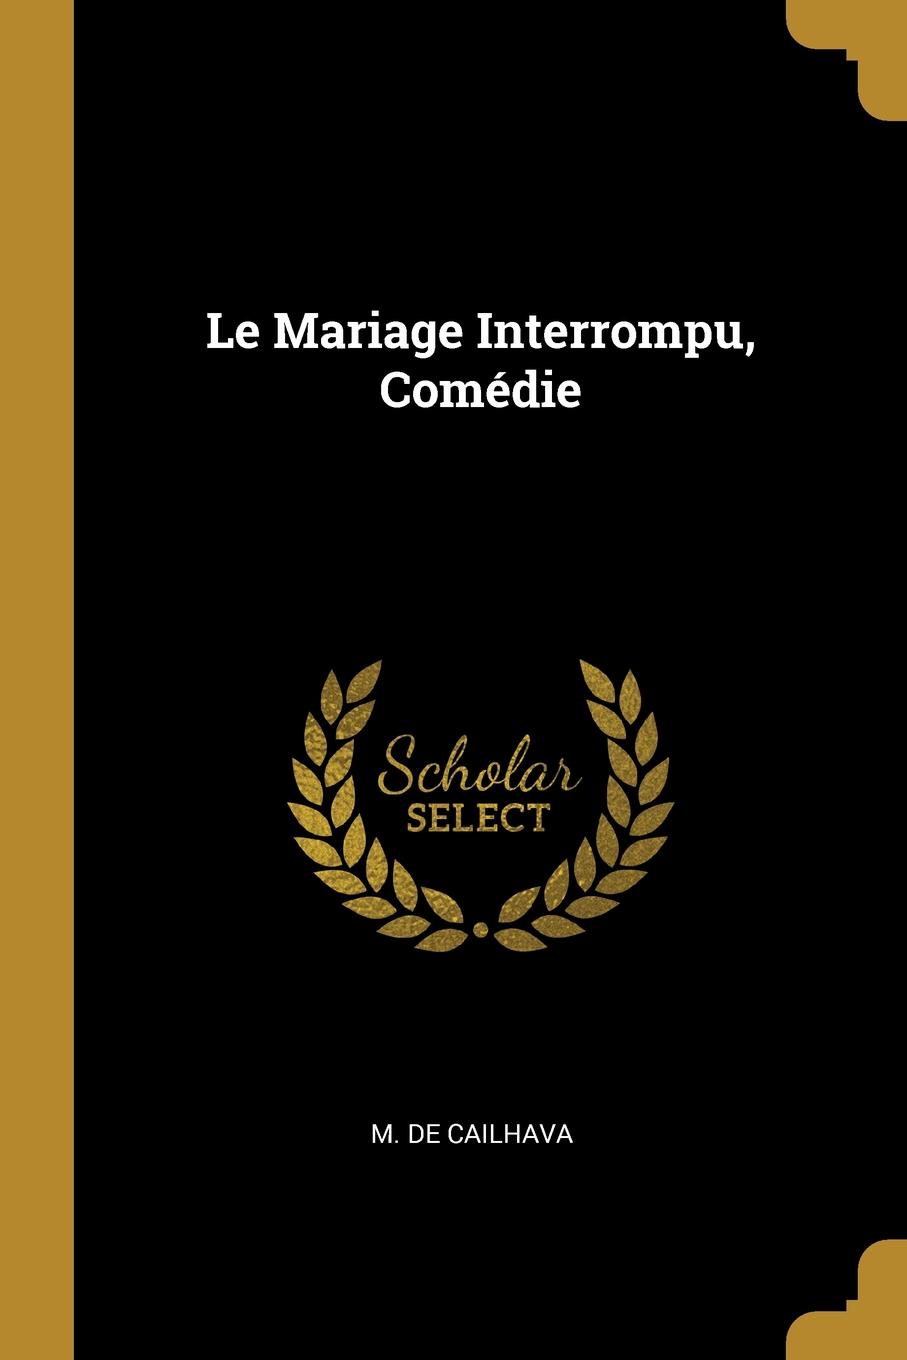 Le Mariage Interrompu, Comedie